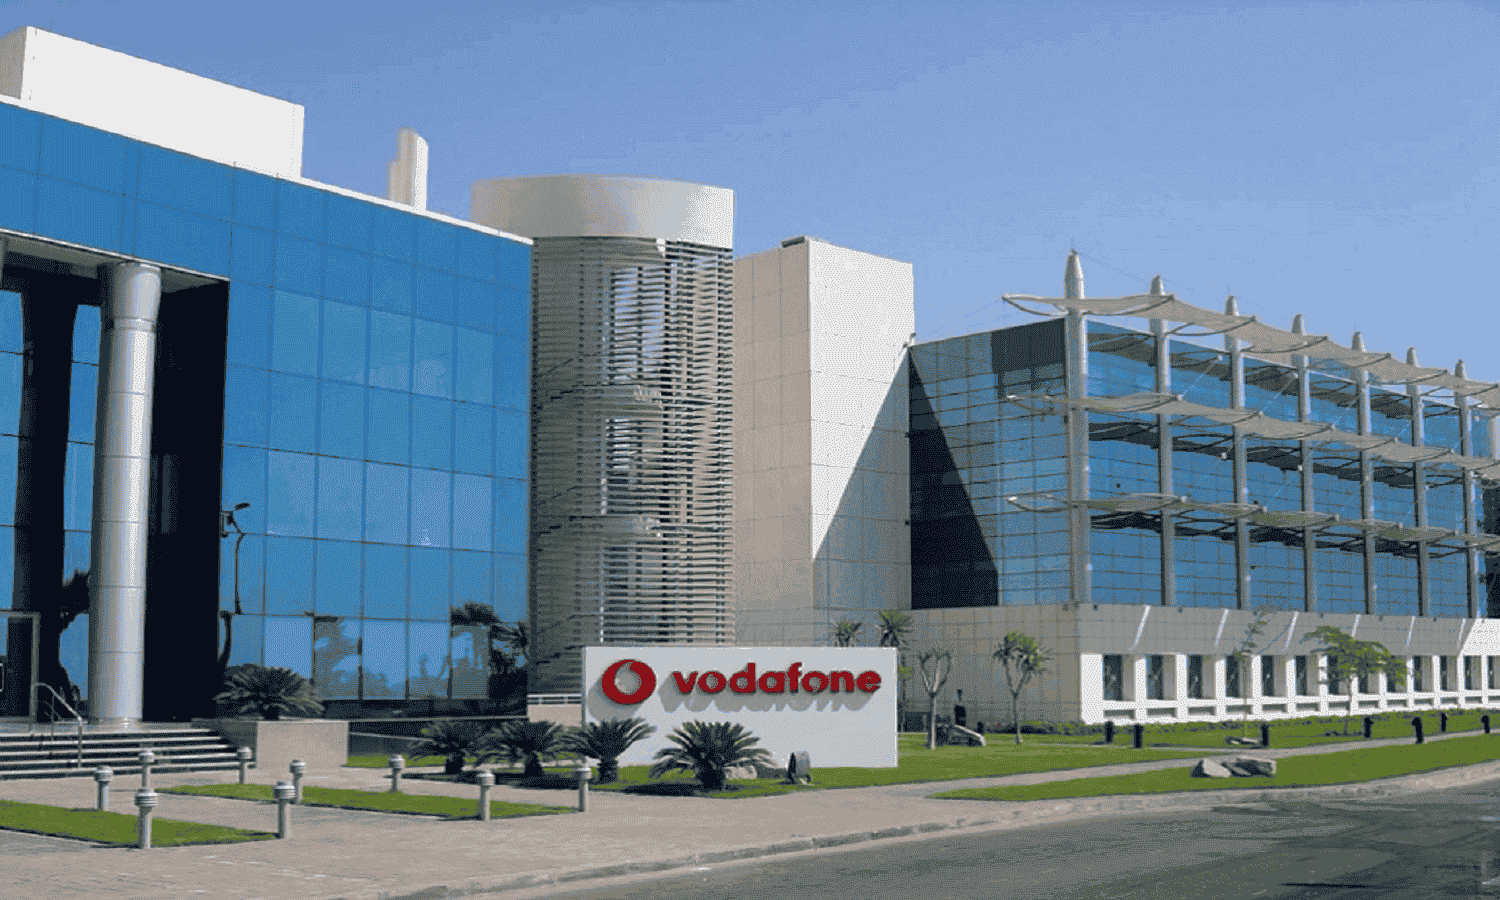 فودافون مصر توضح سبب انقطاع الاتصالات والإنترنت
